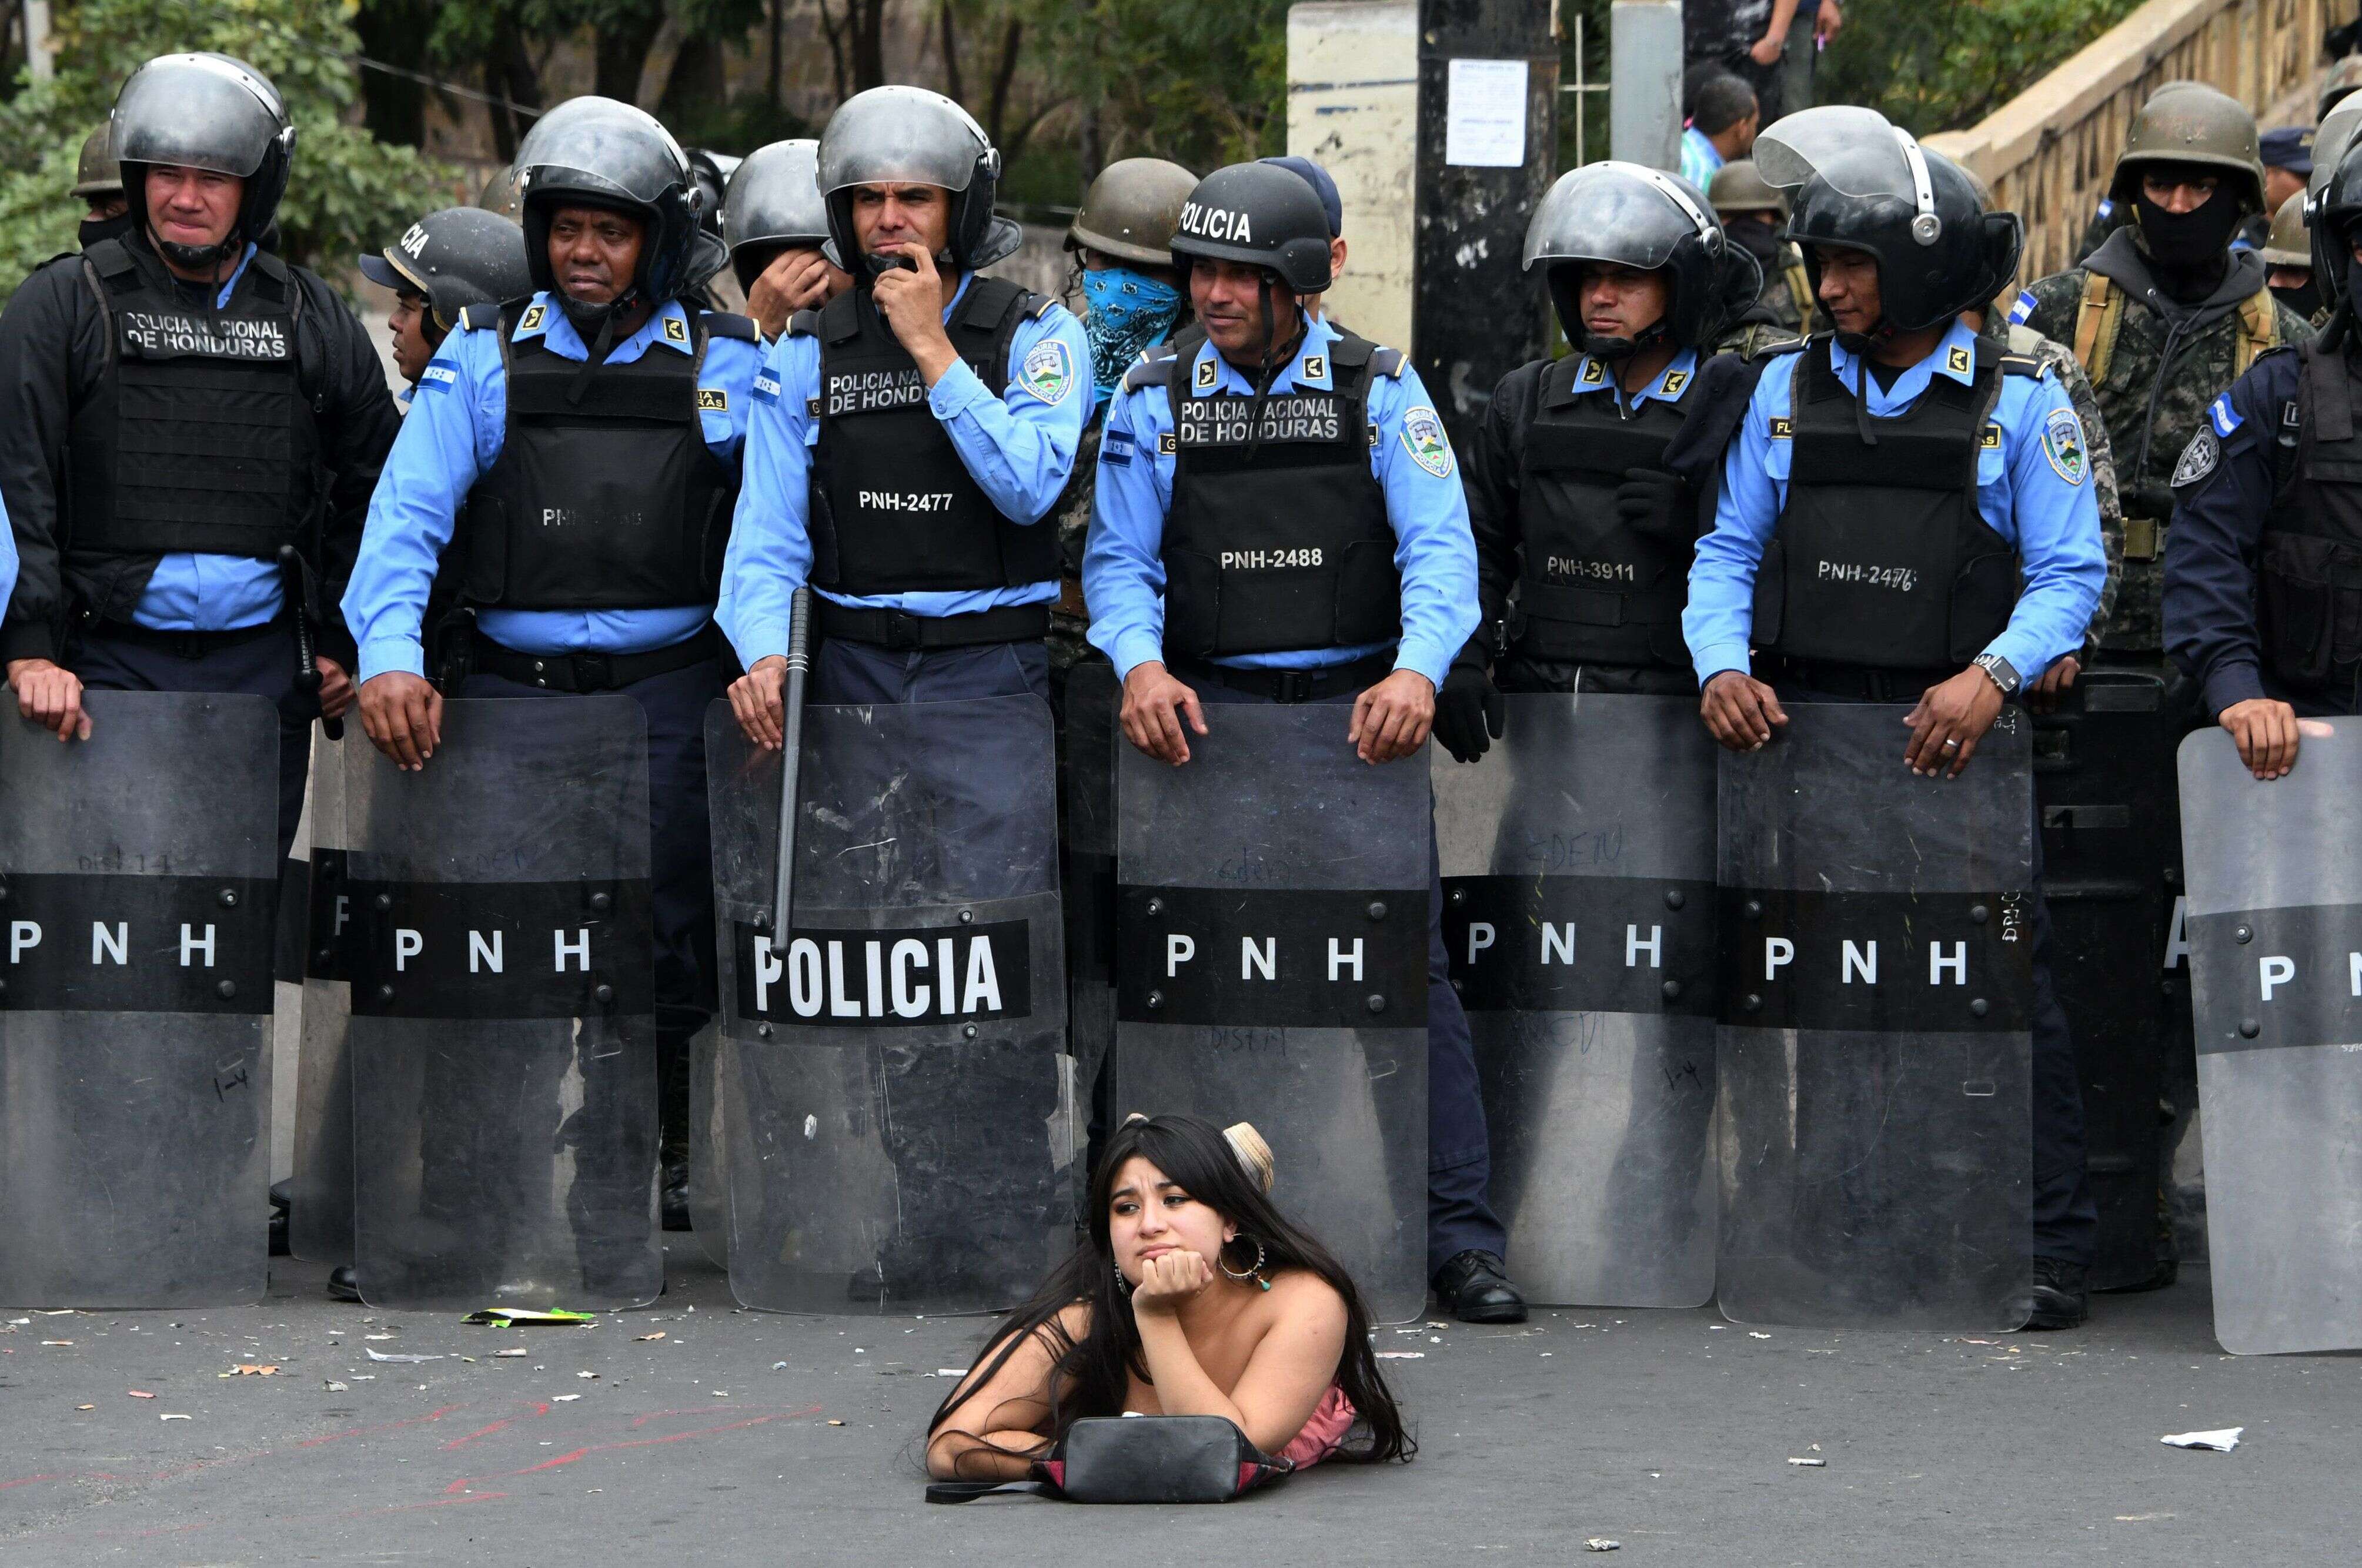 21 janvier - Une supportrice de Salvador Nasralla, candidat à la présidence de l'Alliance contre la dictature au Honduras, dans la rue devant des policiers lors d'une manifestation contre la réélection contestée du président Juan Orlando Hernandez à Tegucigalpa.